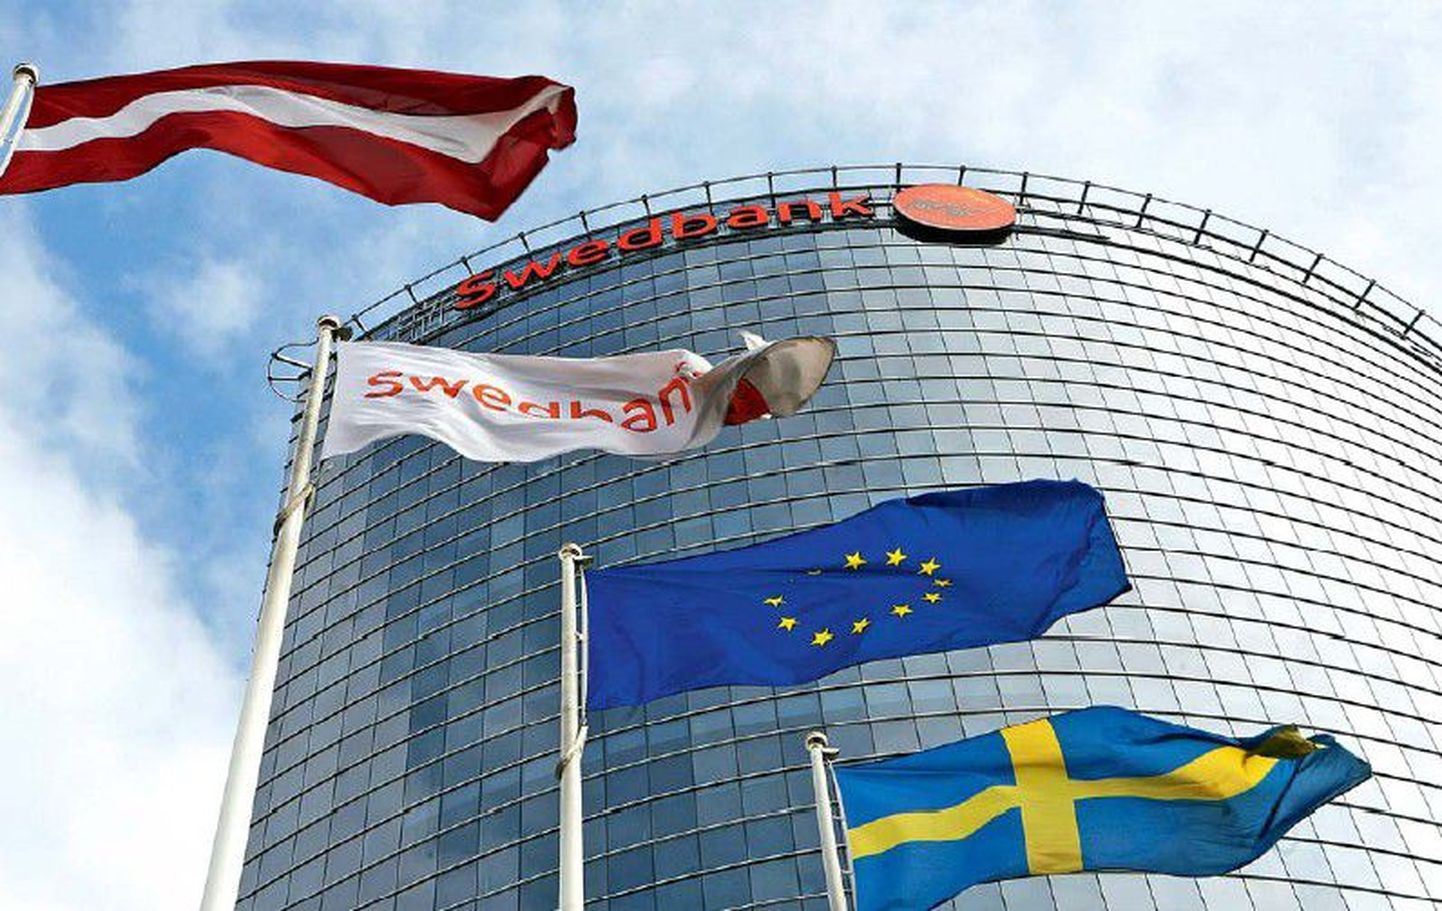 Rootsi majandus on panganduse kaudu tihedalt seotud Baltimaadega.